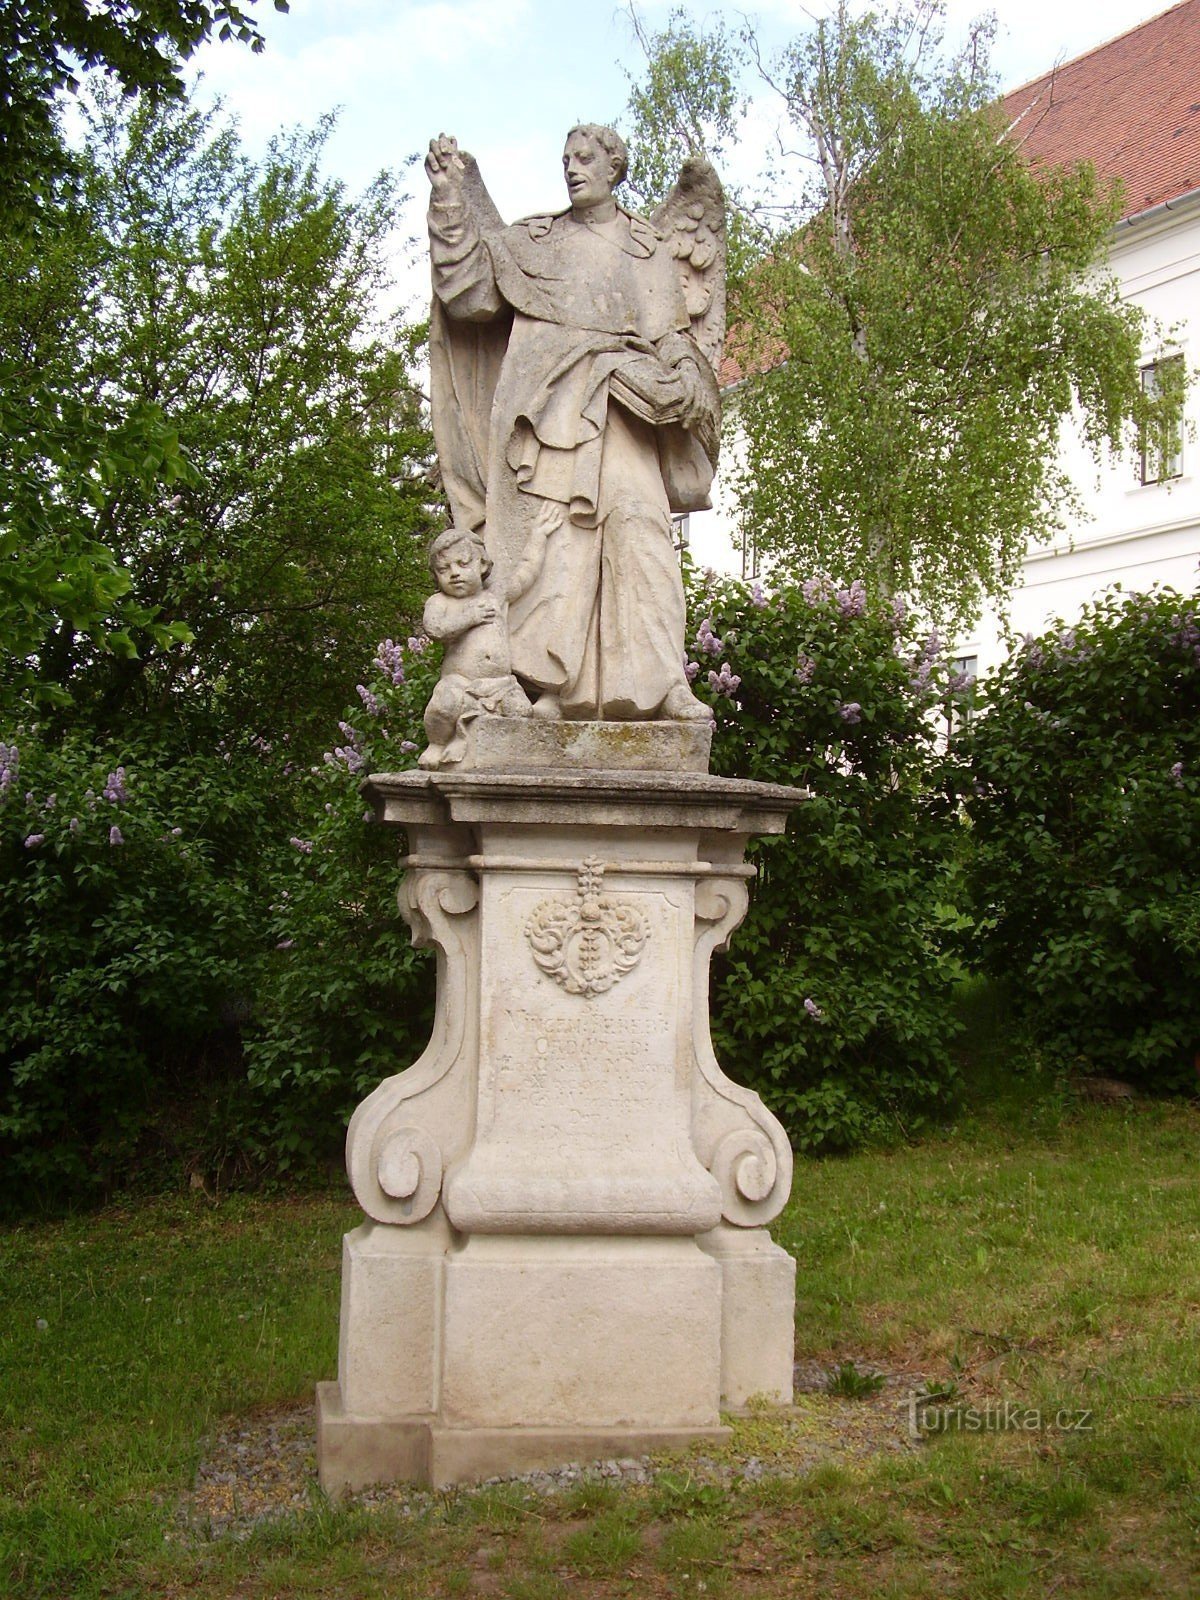 Estátua de S. Vincenzo Ferrerský em Rosice perto de Brno